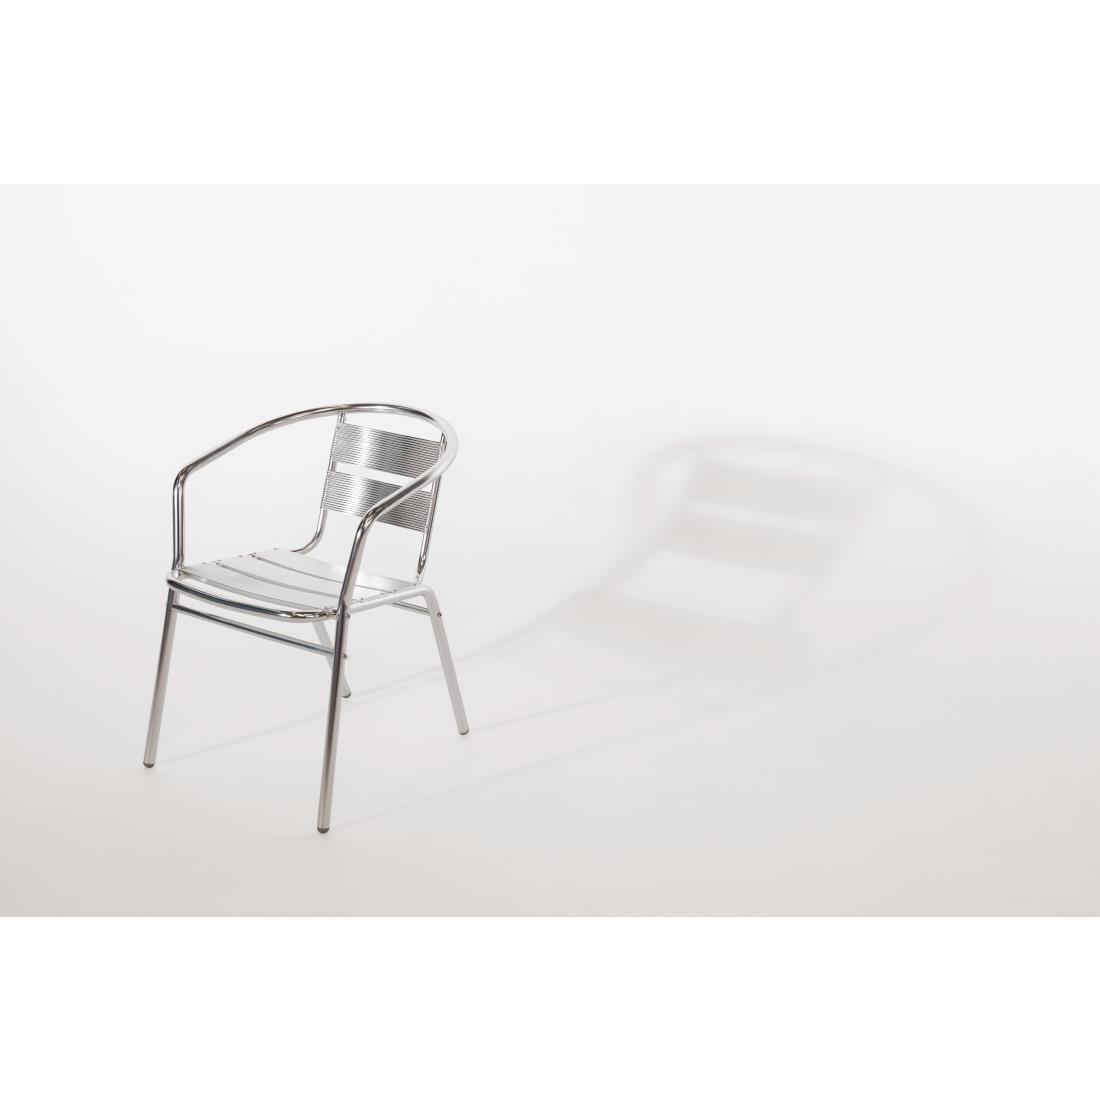 Bolero Aluminium Stacking Chairs (Pack of 4) - U419  - 11